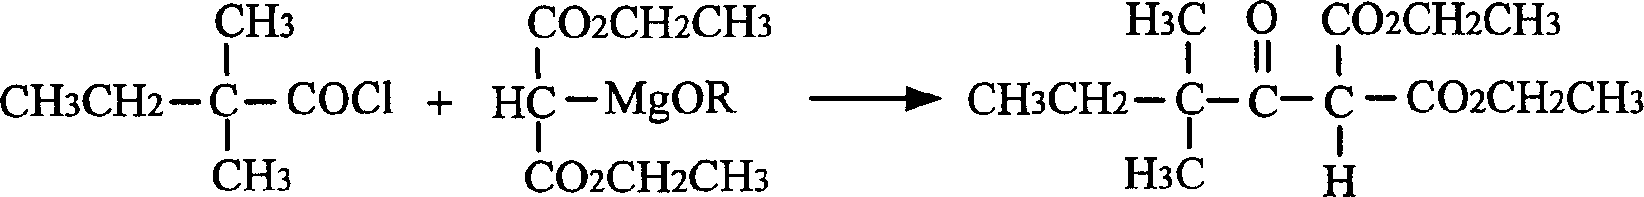 Process for preparing 3, 3-dimethyl -2-pentanone